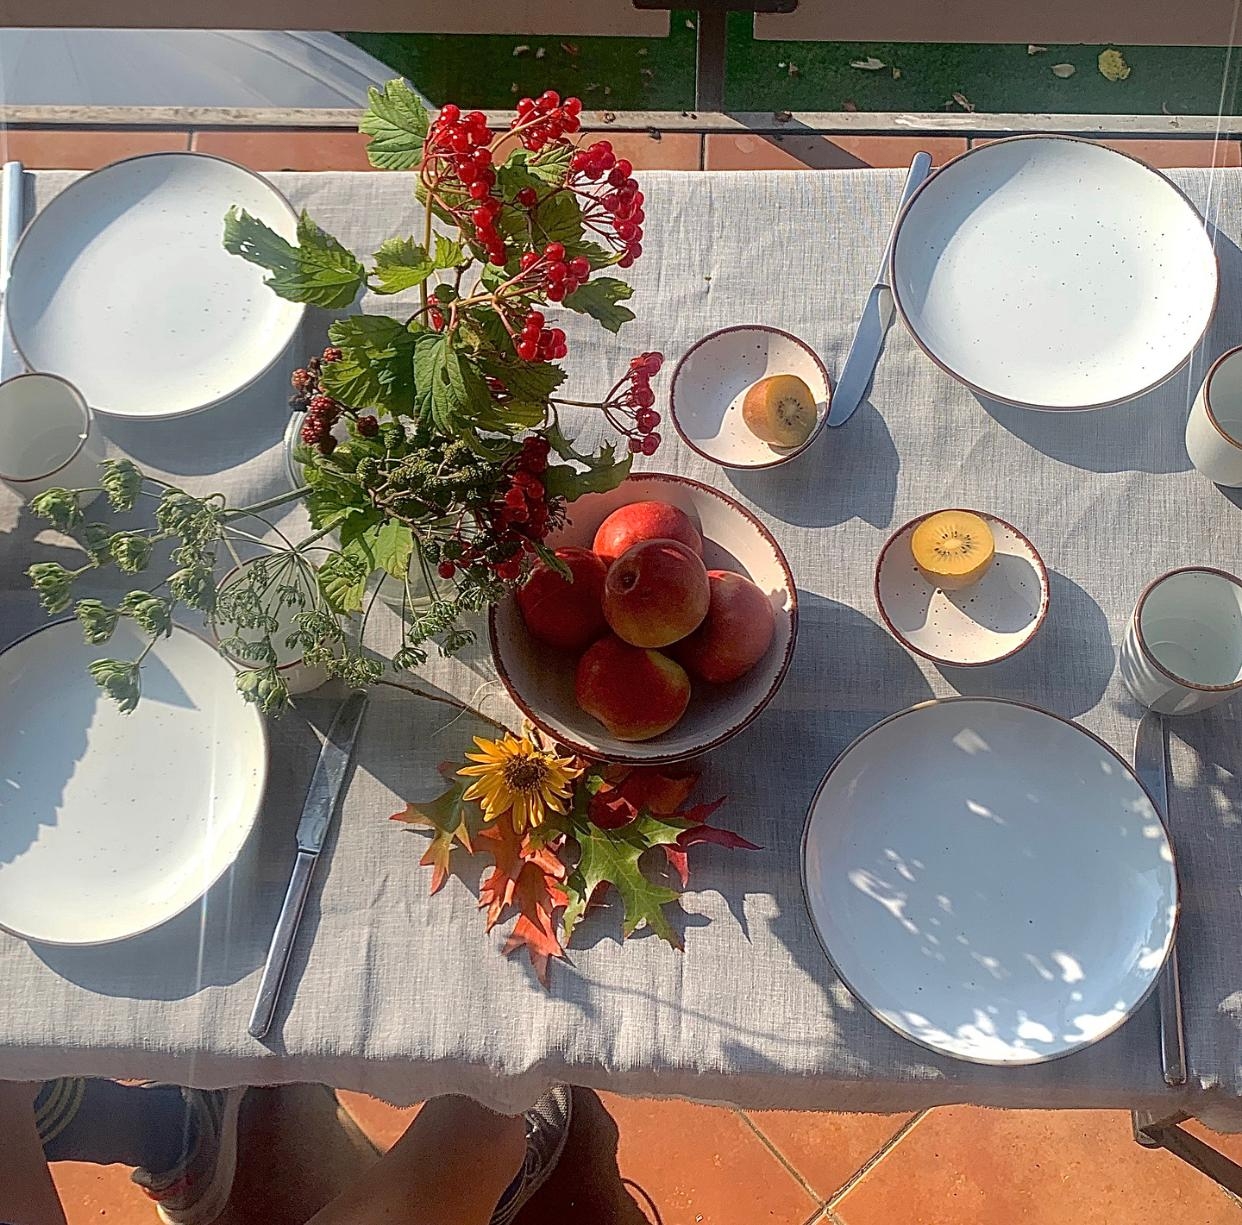 Ein perfekter Tag startet mit einem tollen Frühstück auf dem Balkon.🍂🍁
#tischdeko #herbstdeko #frühstück #geschirr